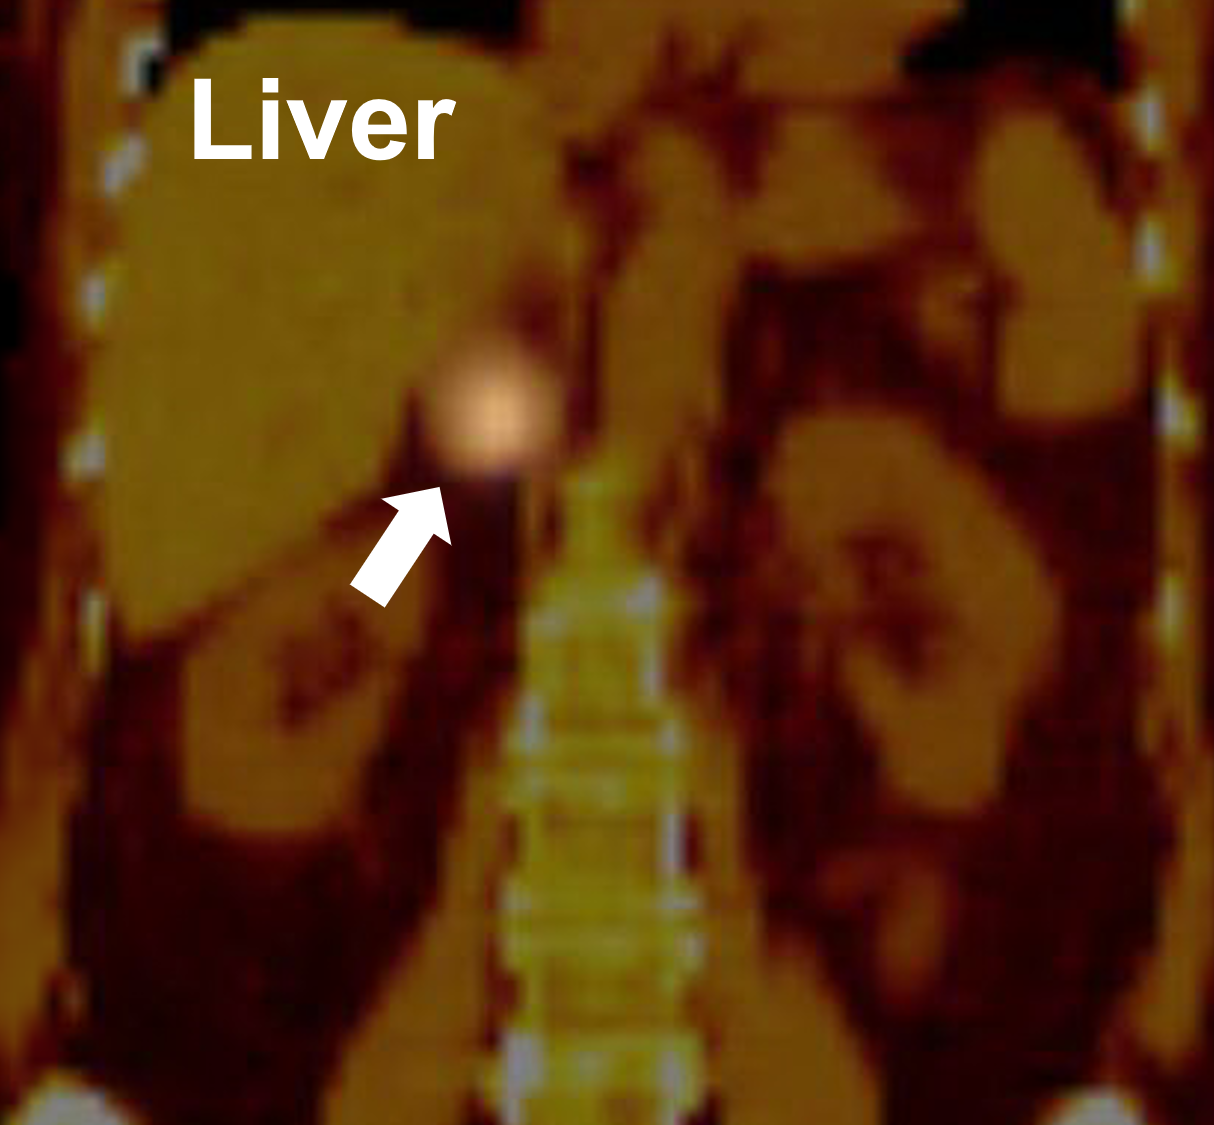 O scanare cu MIBG care demonstrează o captare pozitivă în glanda suprarenală dreaptă (săgeată) care dovedește a fi un feocromocitom.